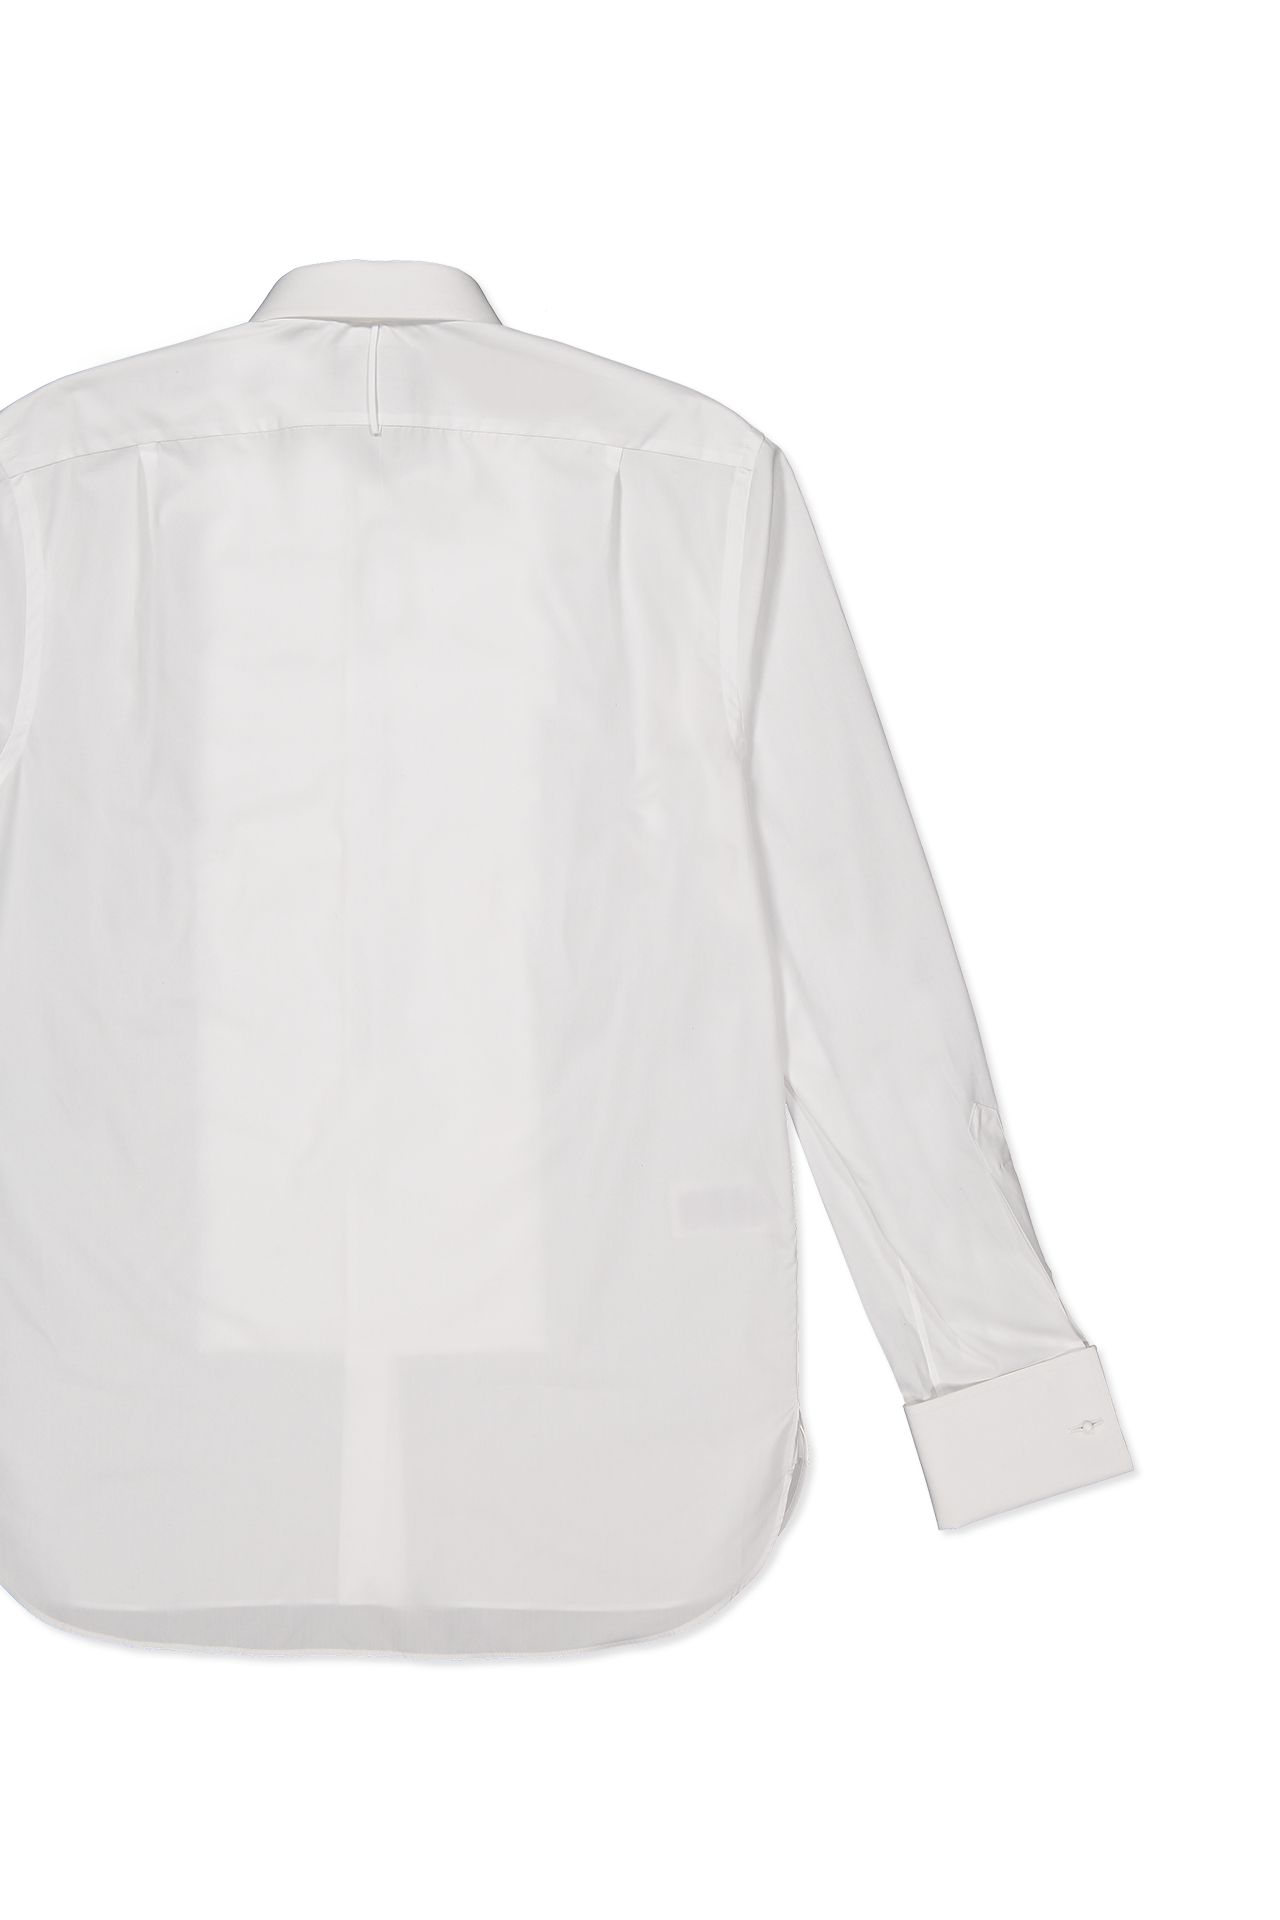 Dexter Pleated Bib Poplin Shirt (7157377990771)